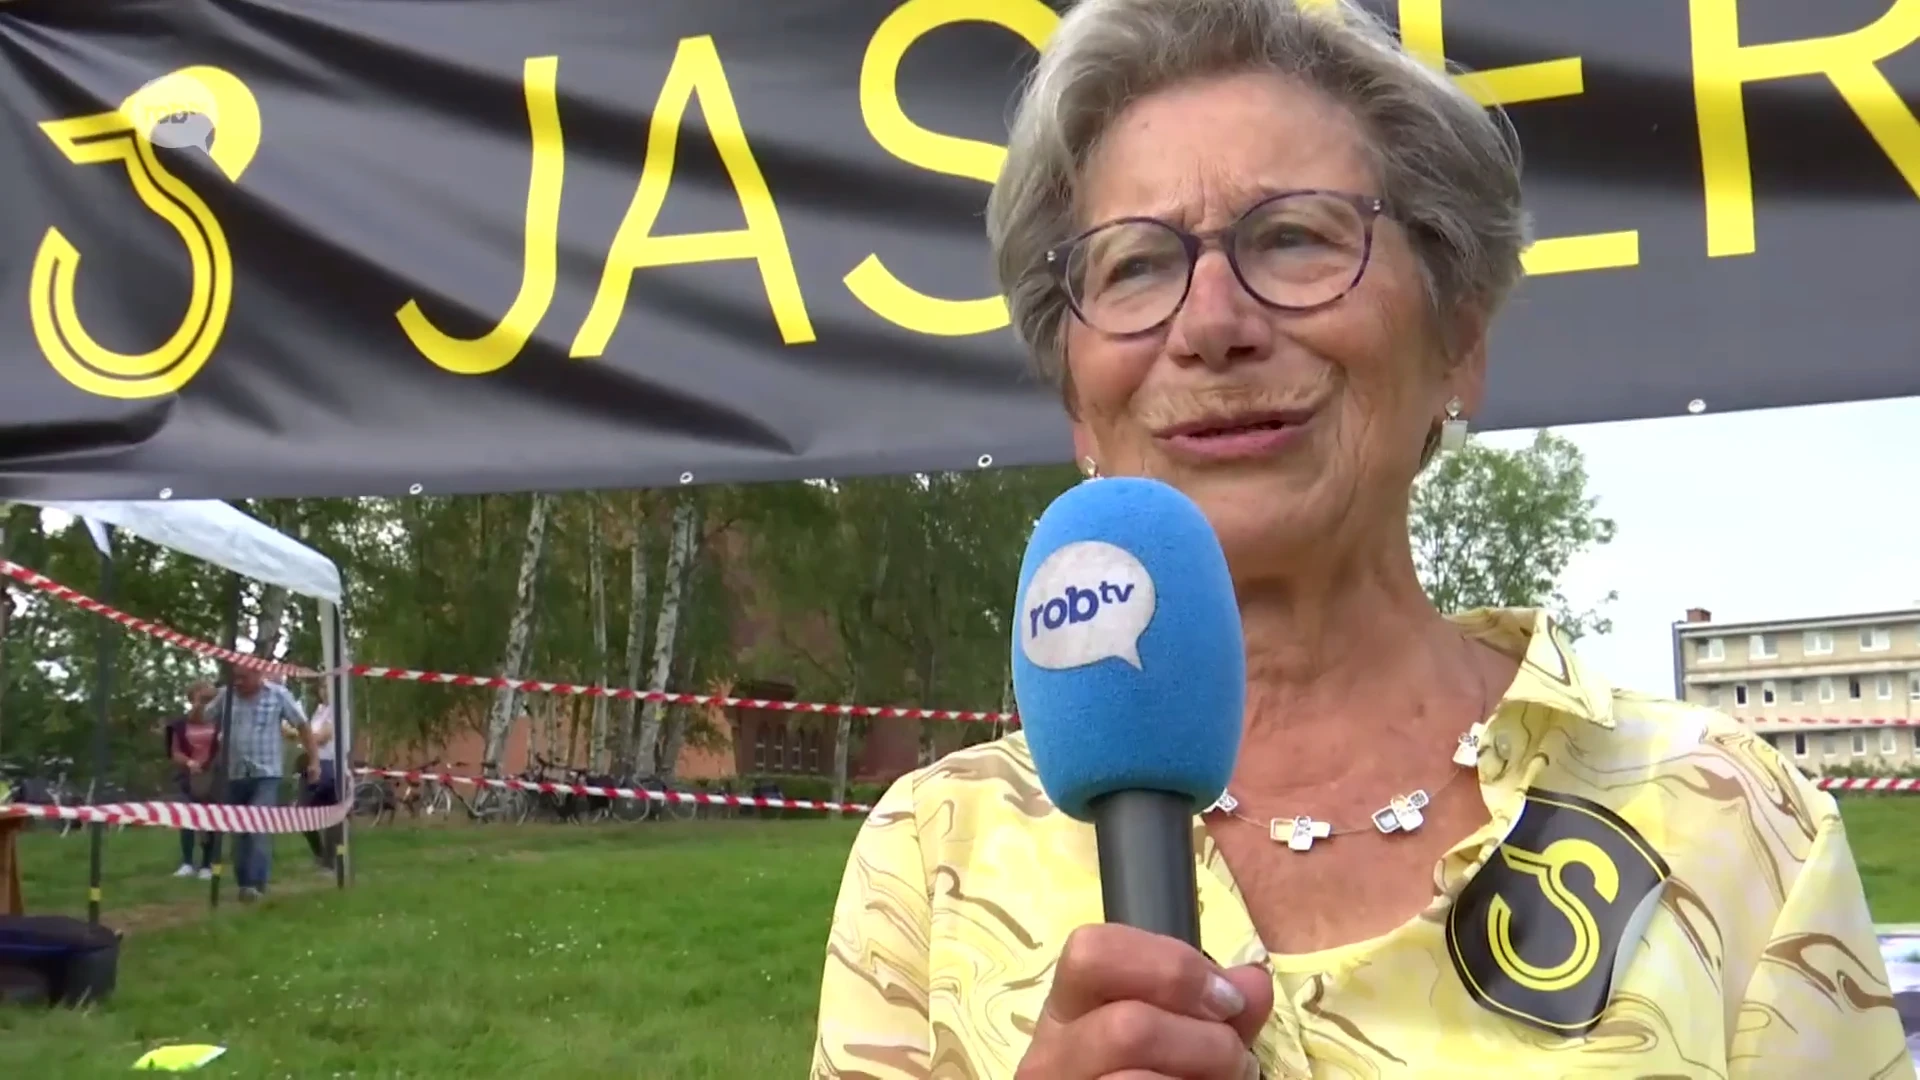 De grote dag voor de fanclub van Jasper Stuyven: tranen bij oma Stuyven